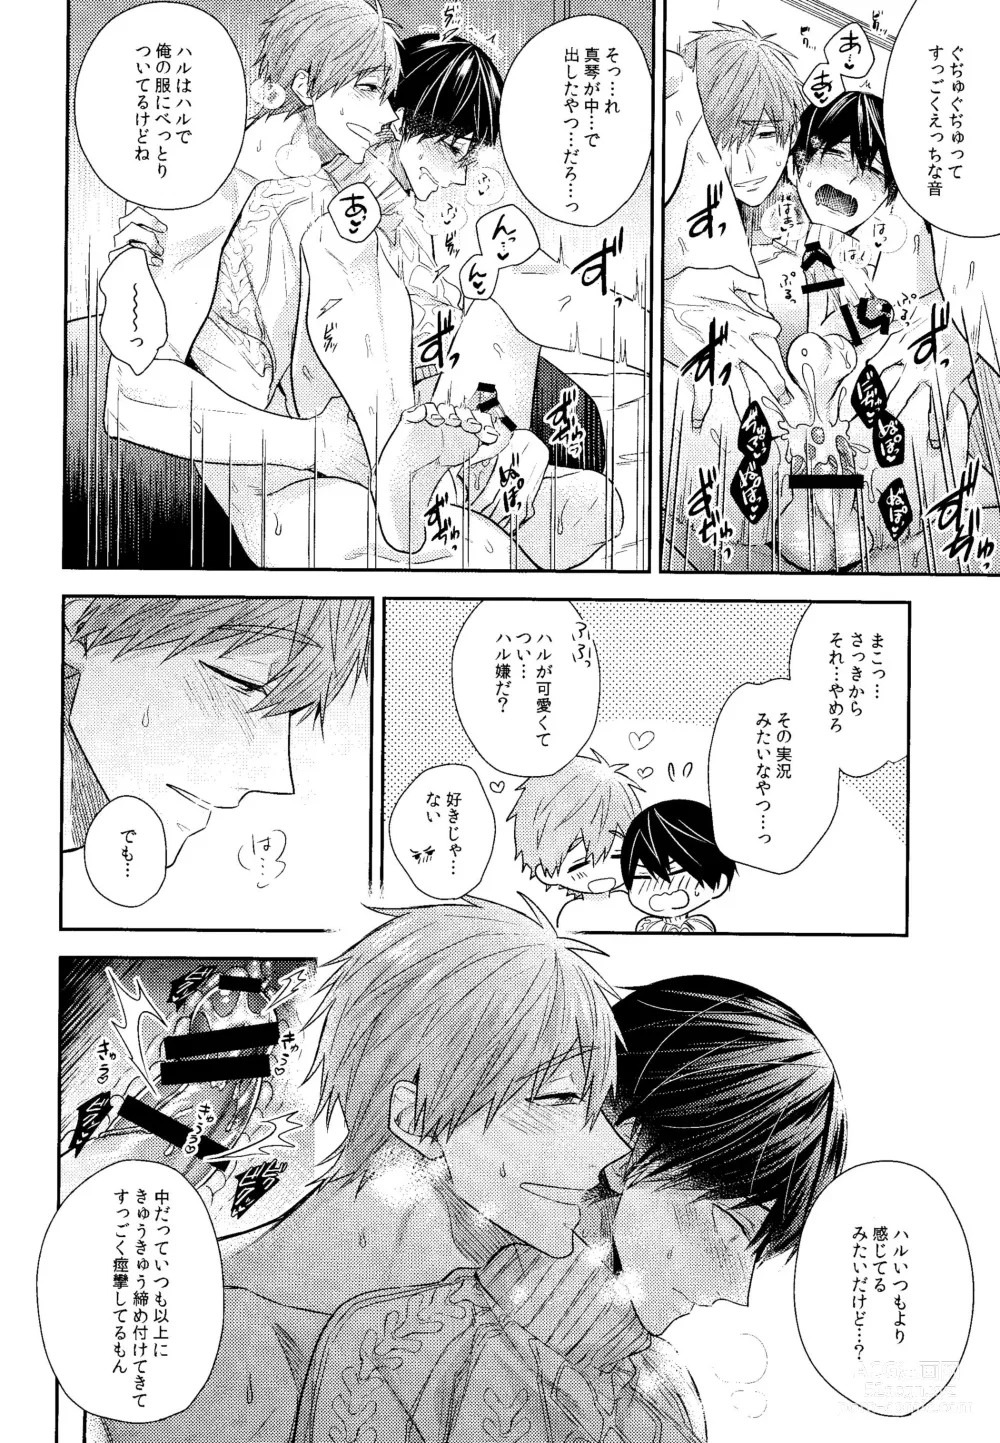 Page 31 of doujinshi Kare Knit to Makoto to Haruka.